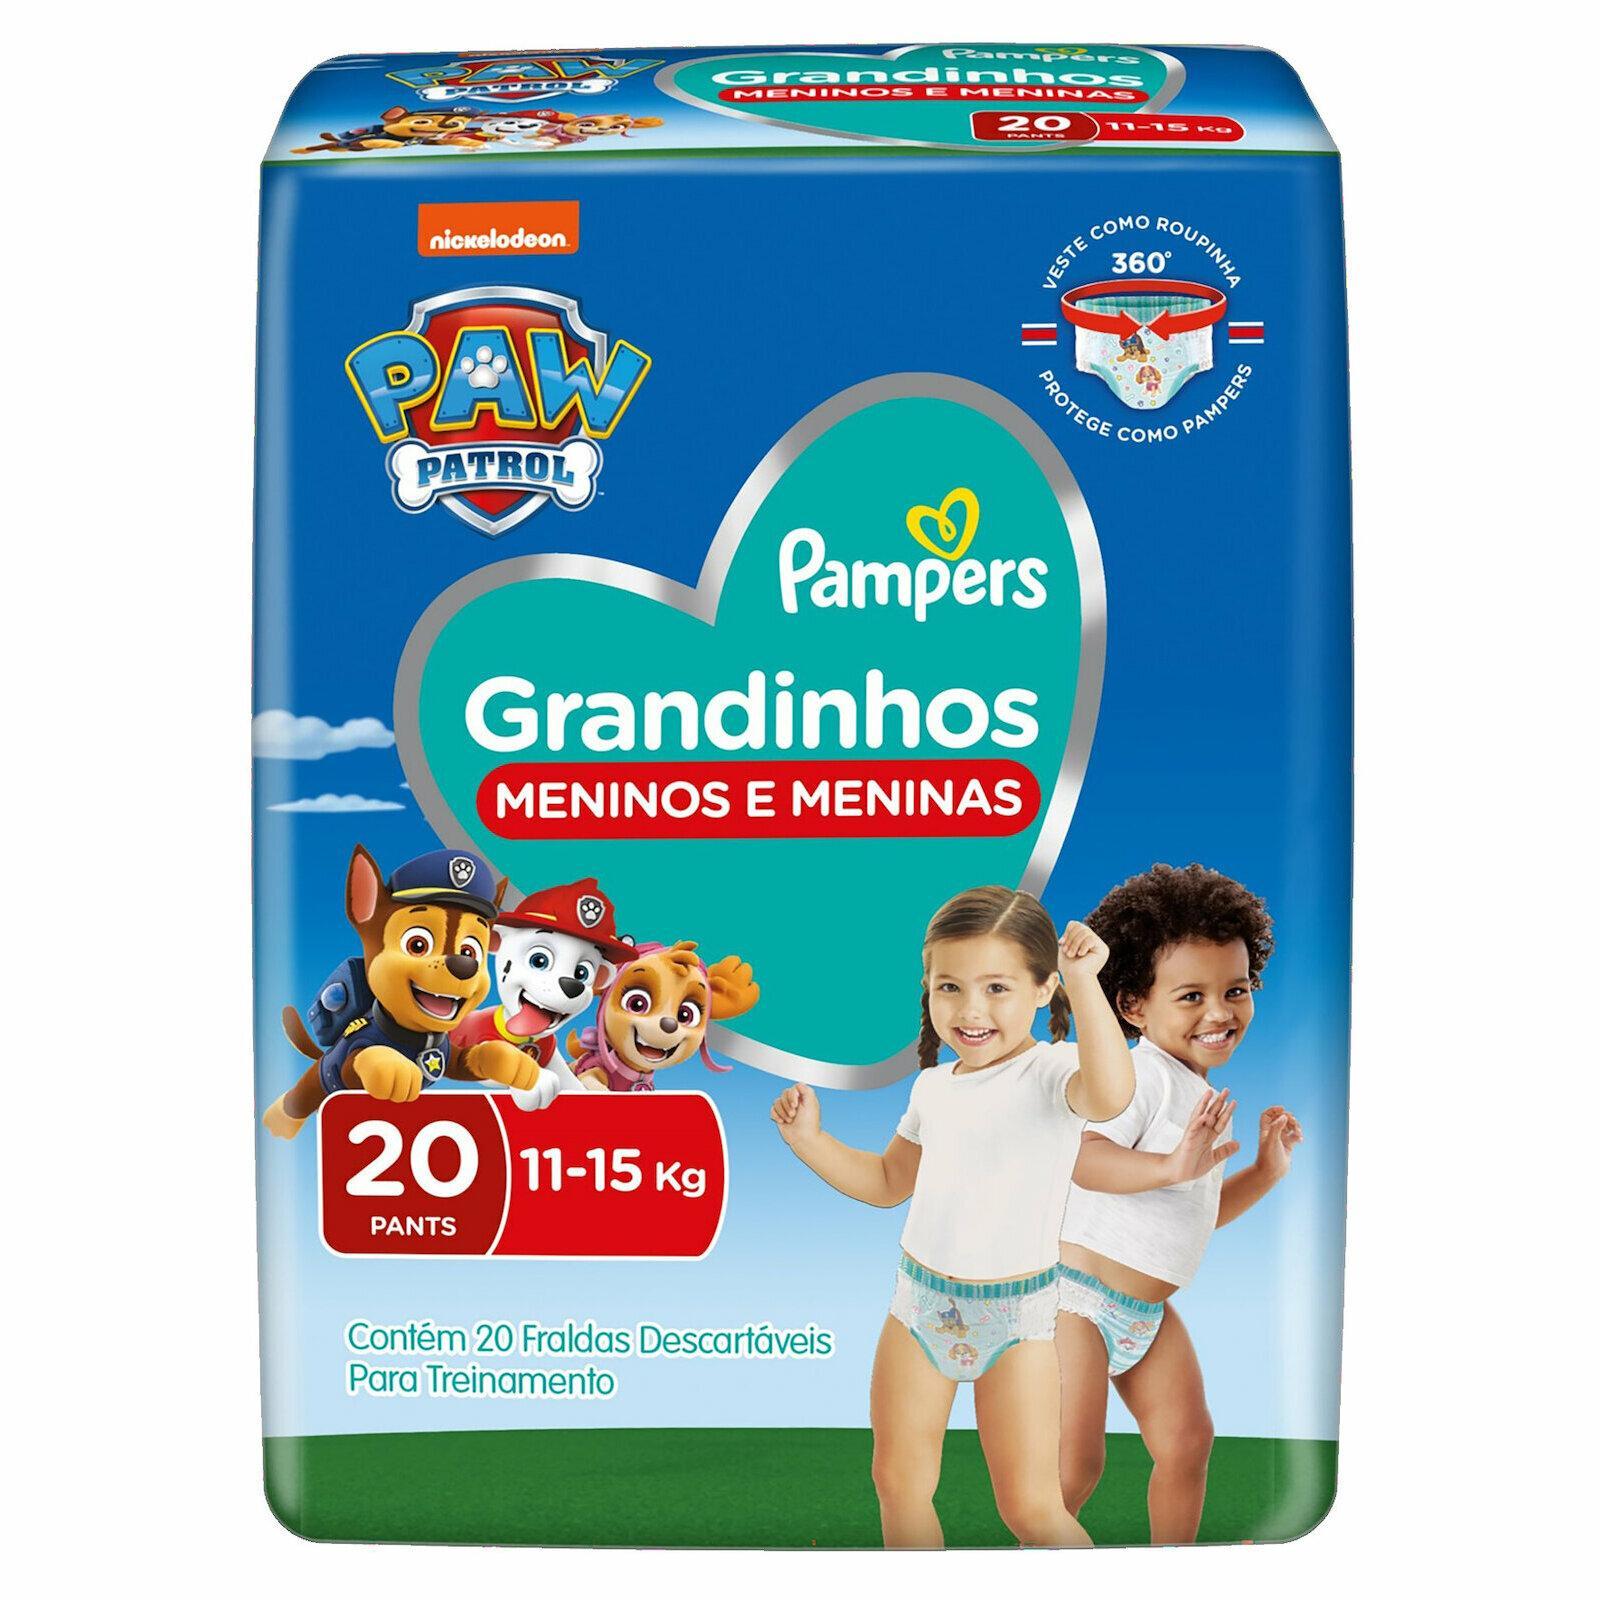 FRALDA PAMPERS GRANDINHOS 11 A 15KG C/20